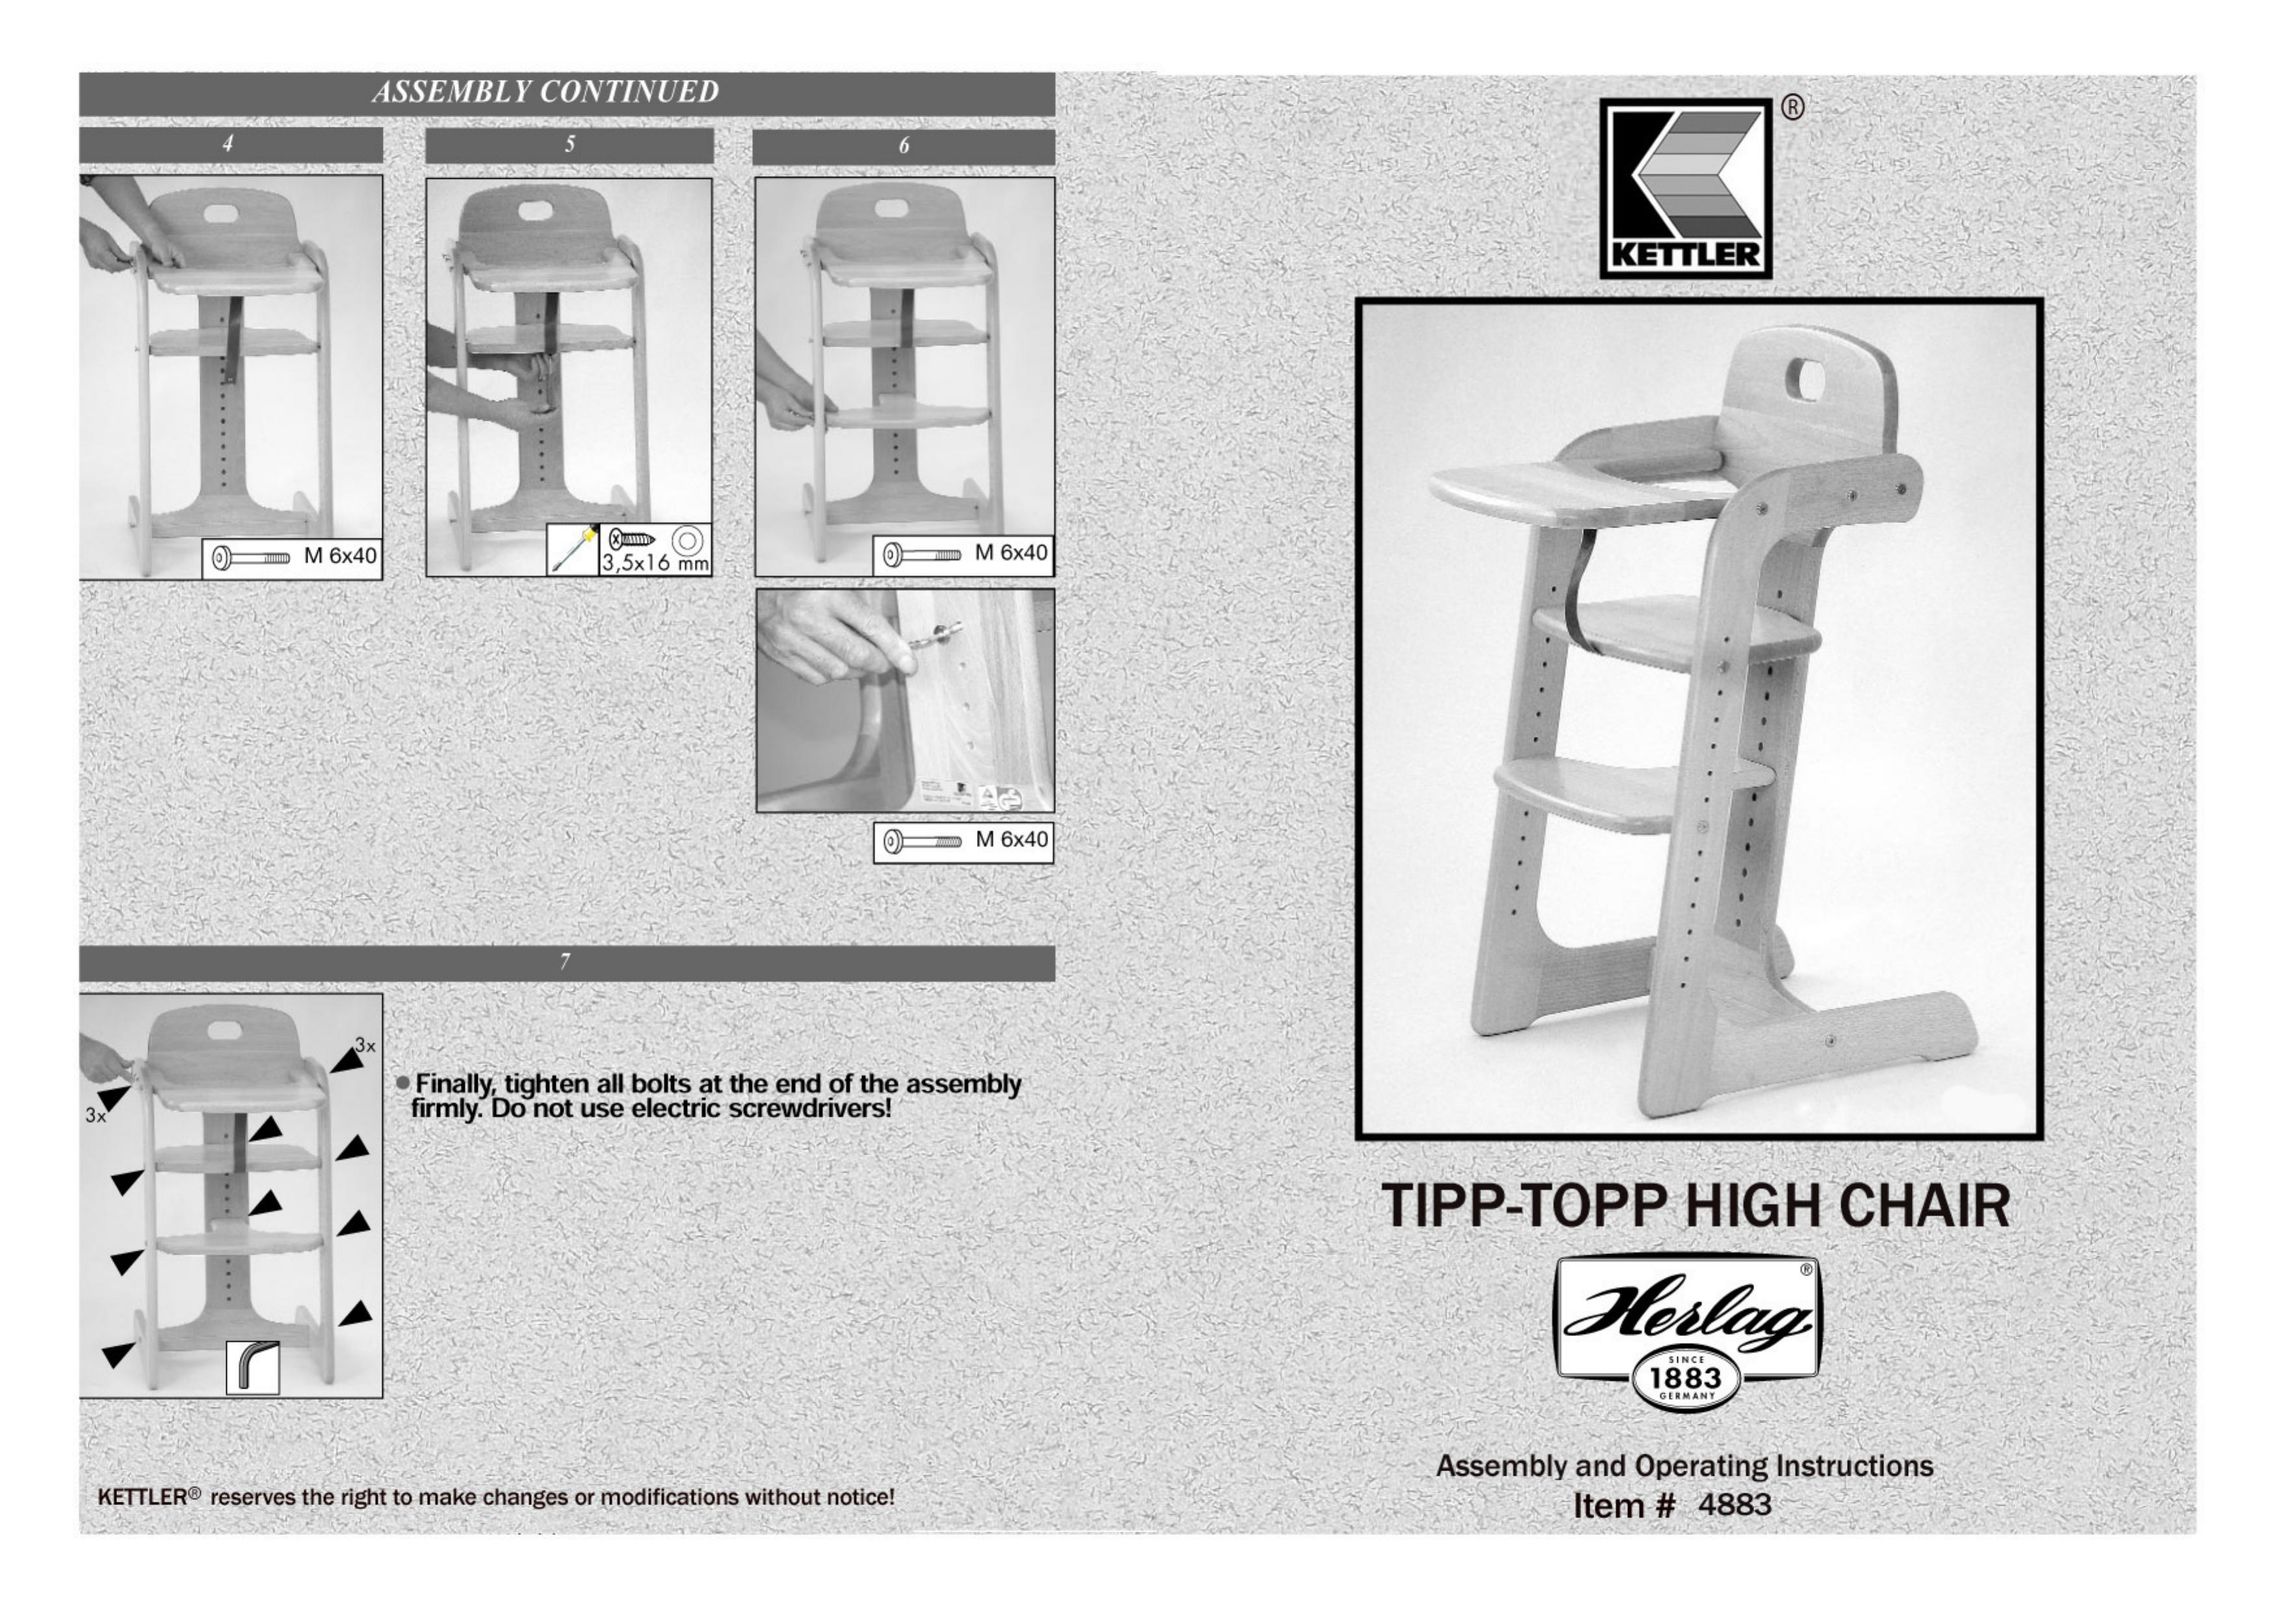 Kettler 4883 High Chair User Manual